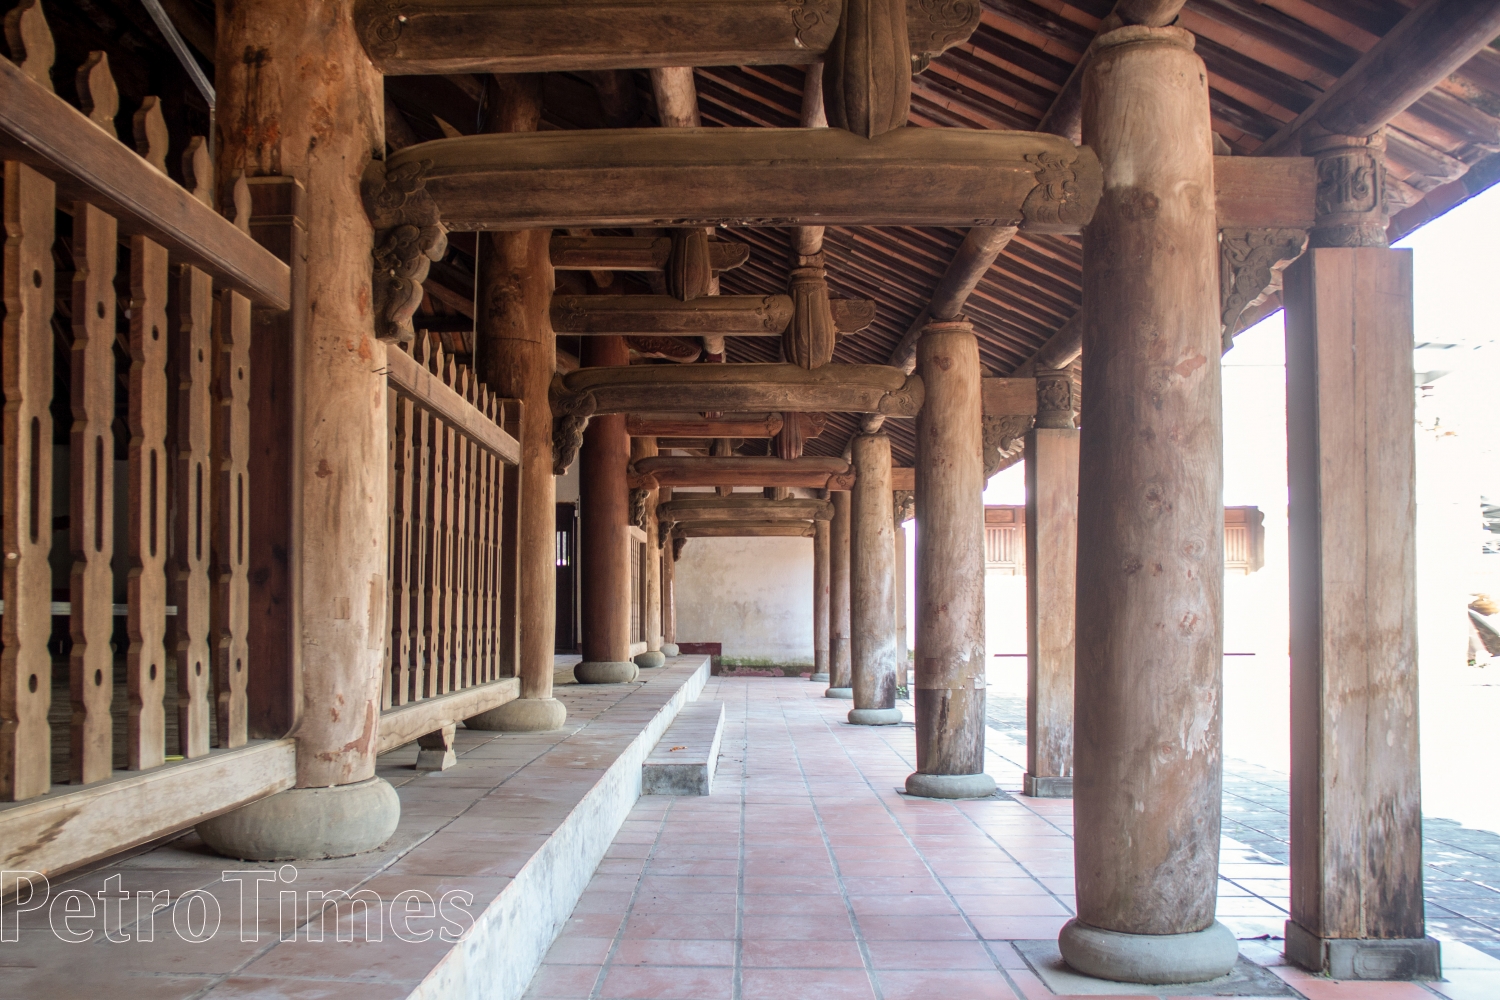 Quảng Nam: Đình làng hơn 550 năm lưu giữ nhiều giá trị lịch sử